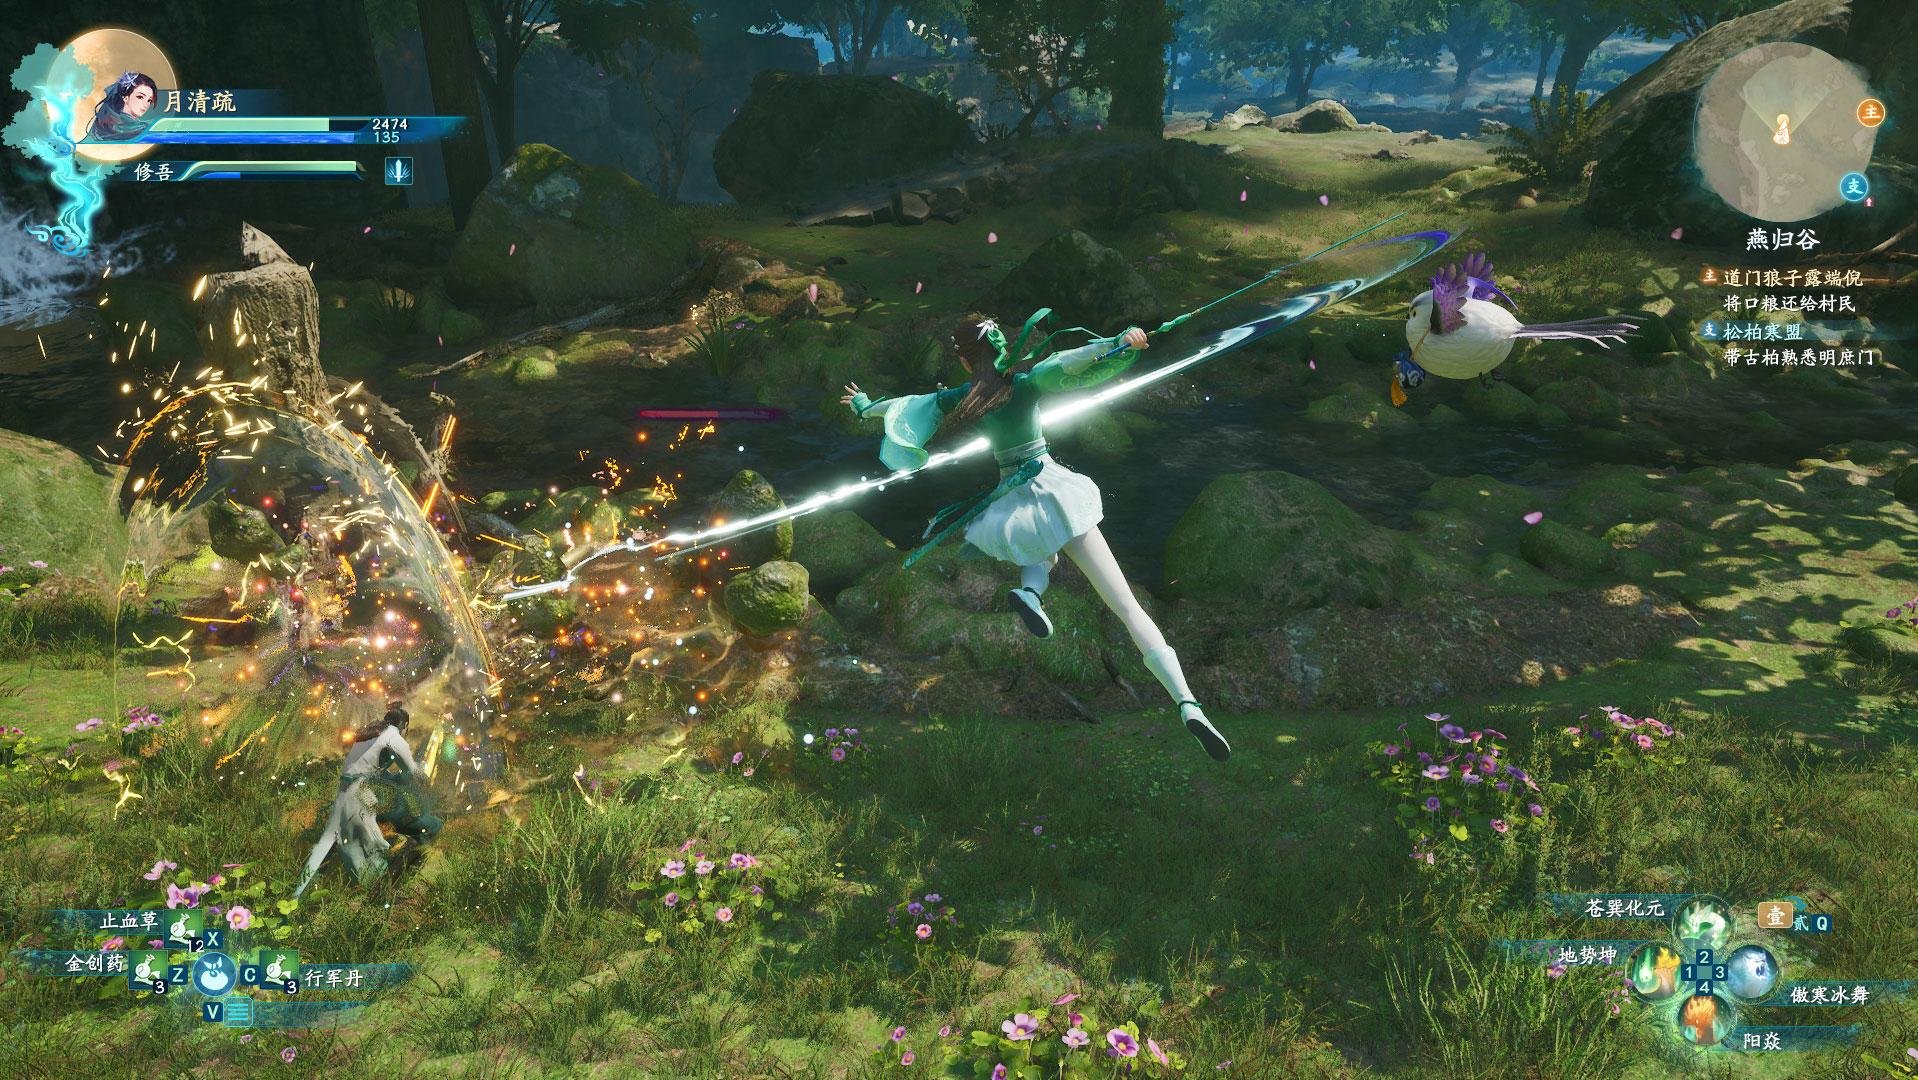 Sword and Fairy: Together Forever traz mecânicas de combate em tempo real em um mundo vibrante